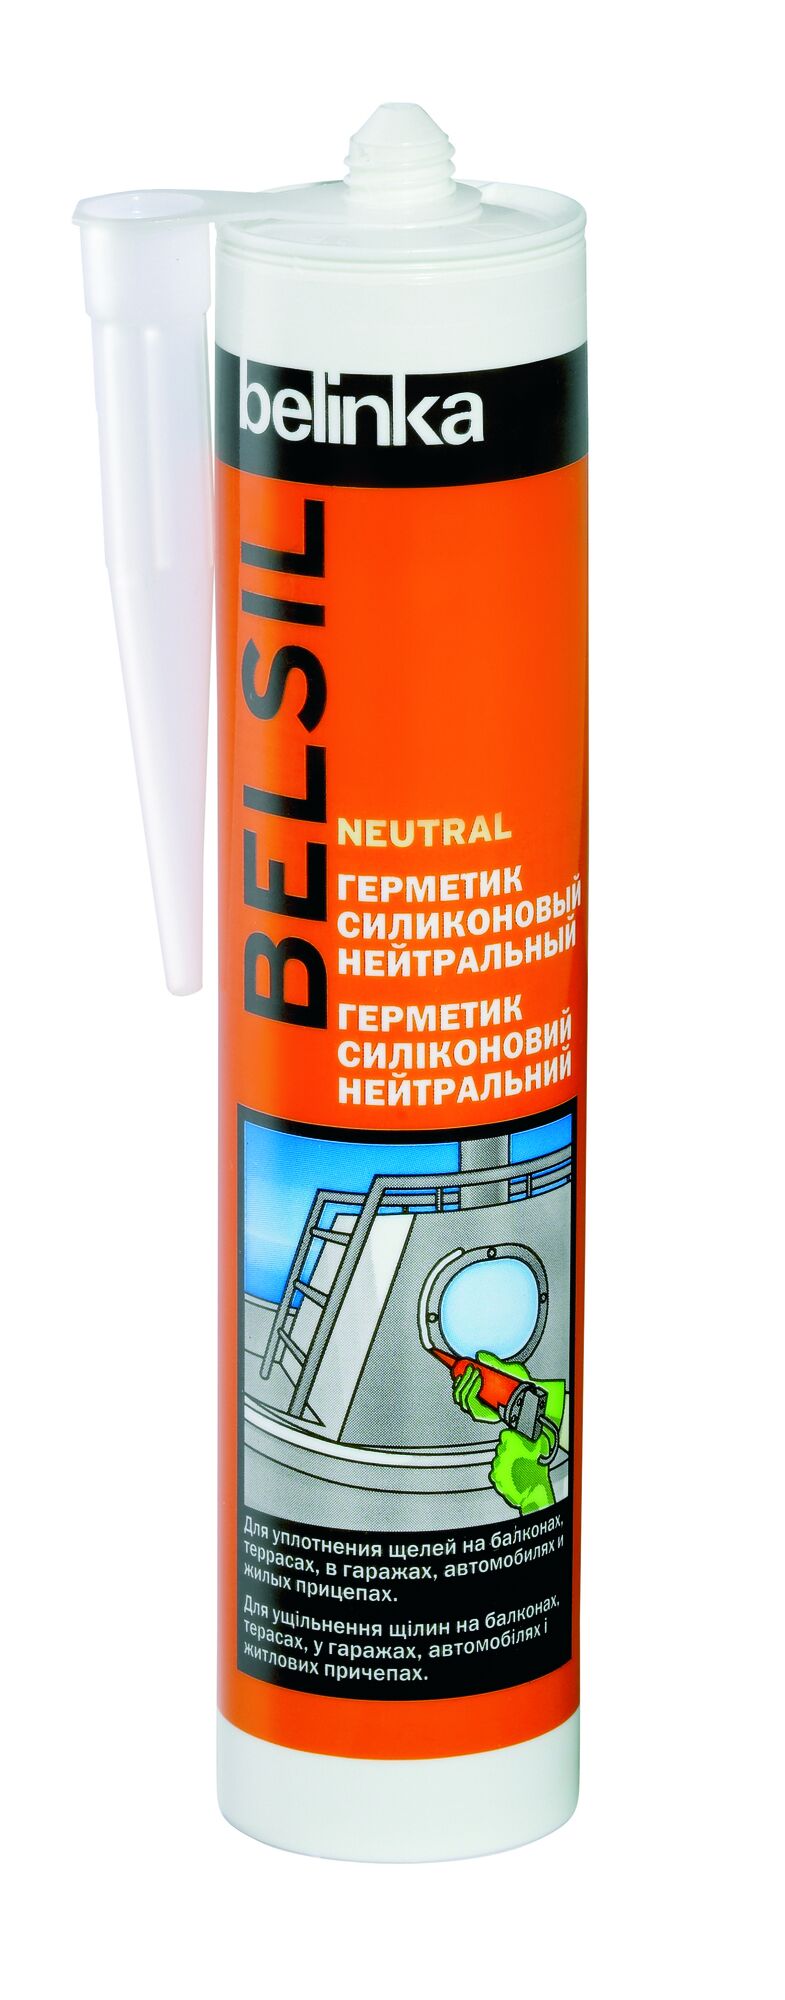 Герметик силиконовый нейтральный прозрачный Belinka Belsil 280 мл Neutral